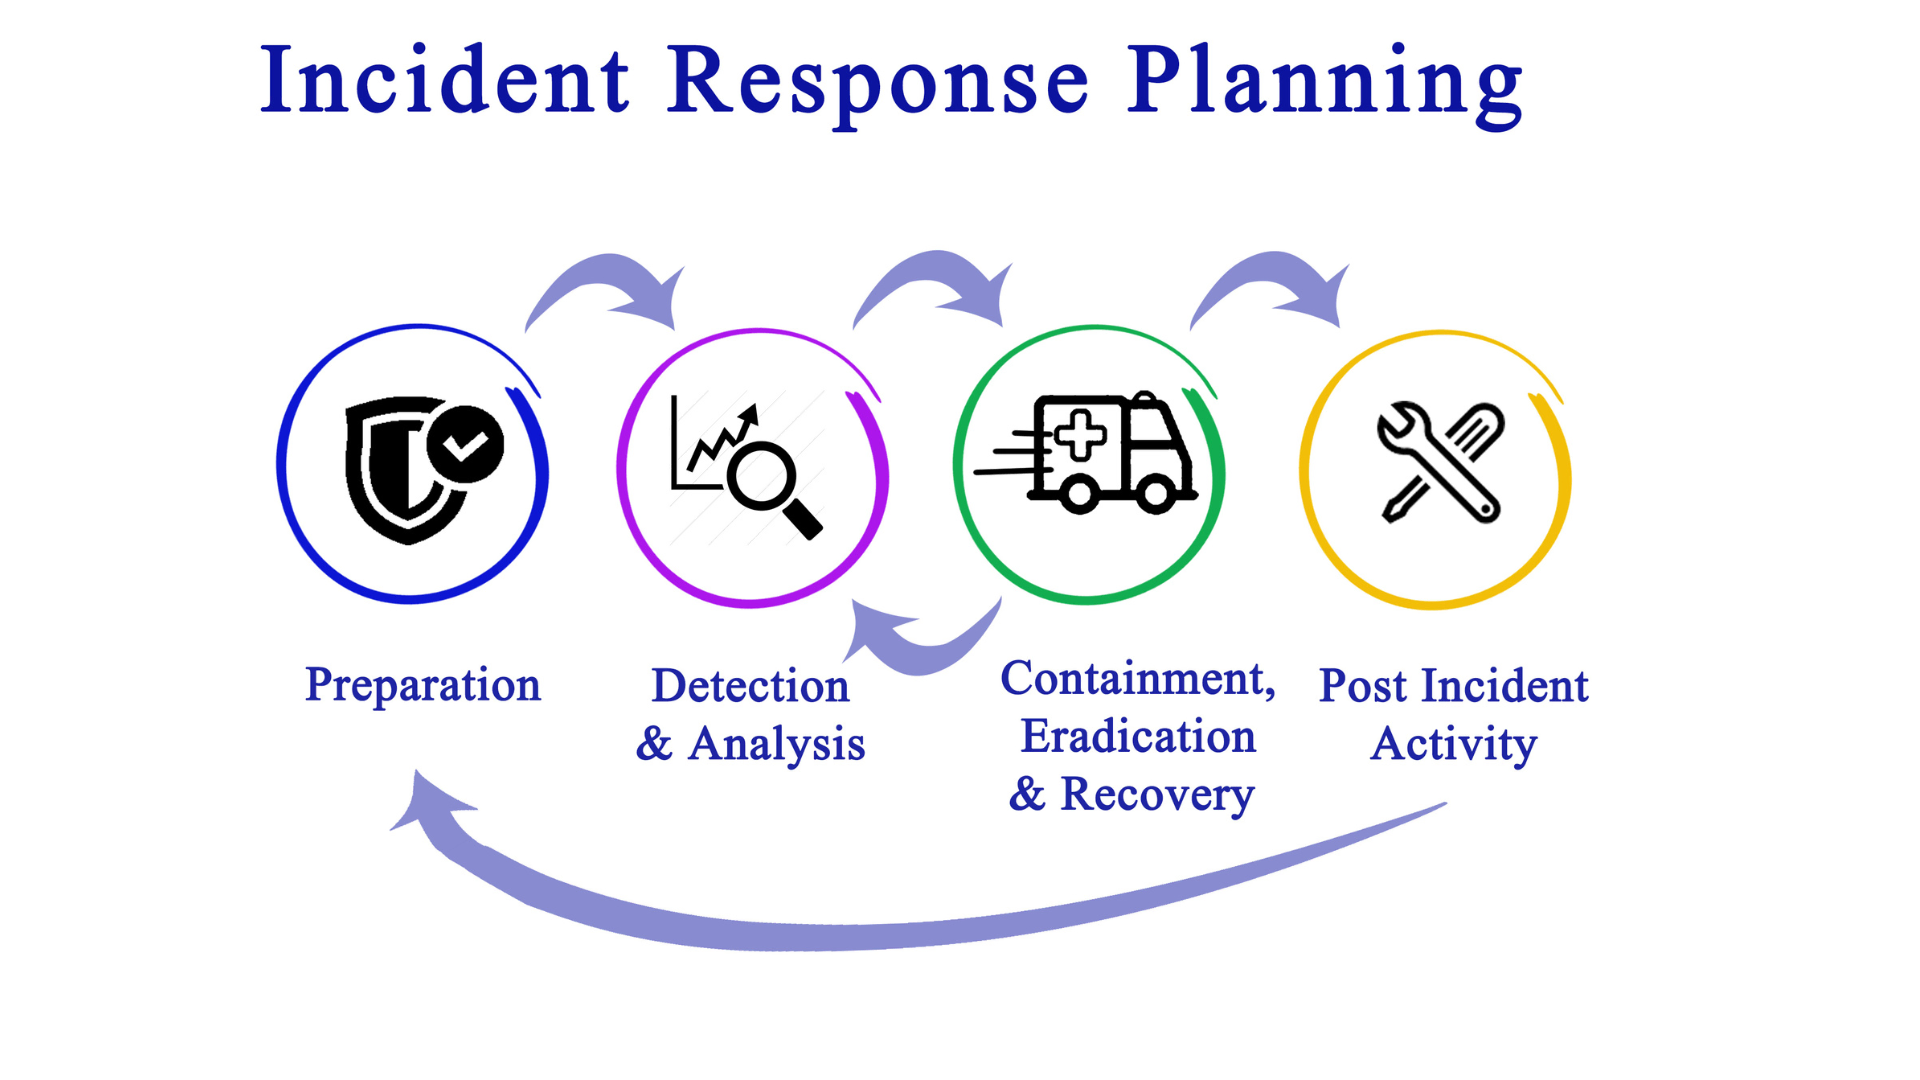 Incident Response: Ein System zur Erkennung, Eindämmung und Elimination von Cyber-Angriffen